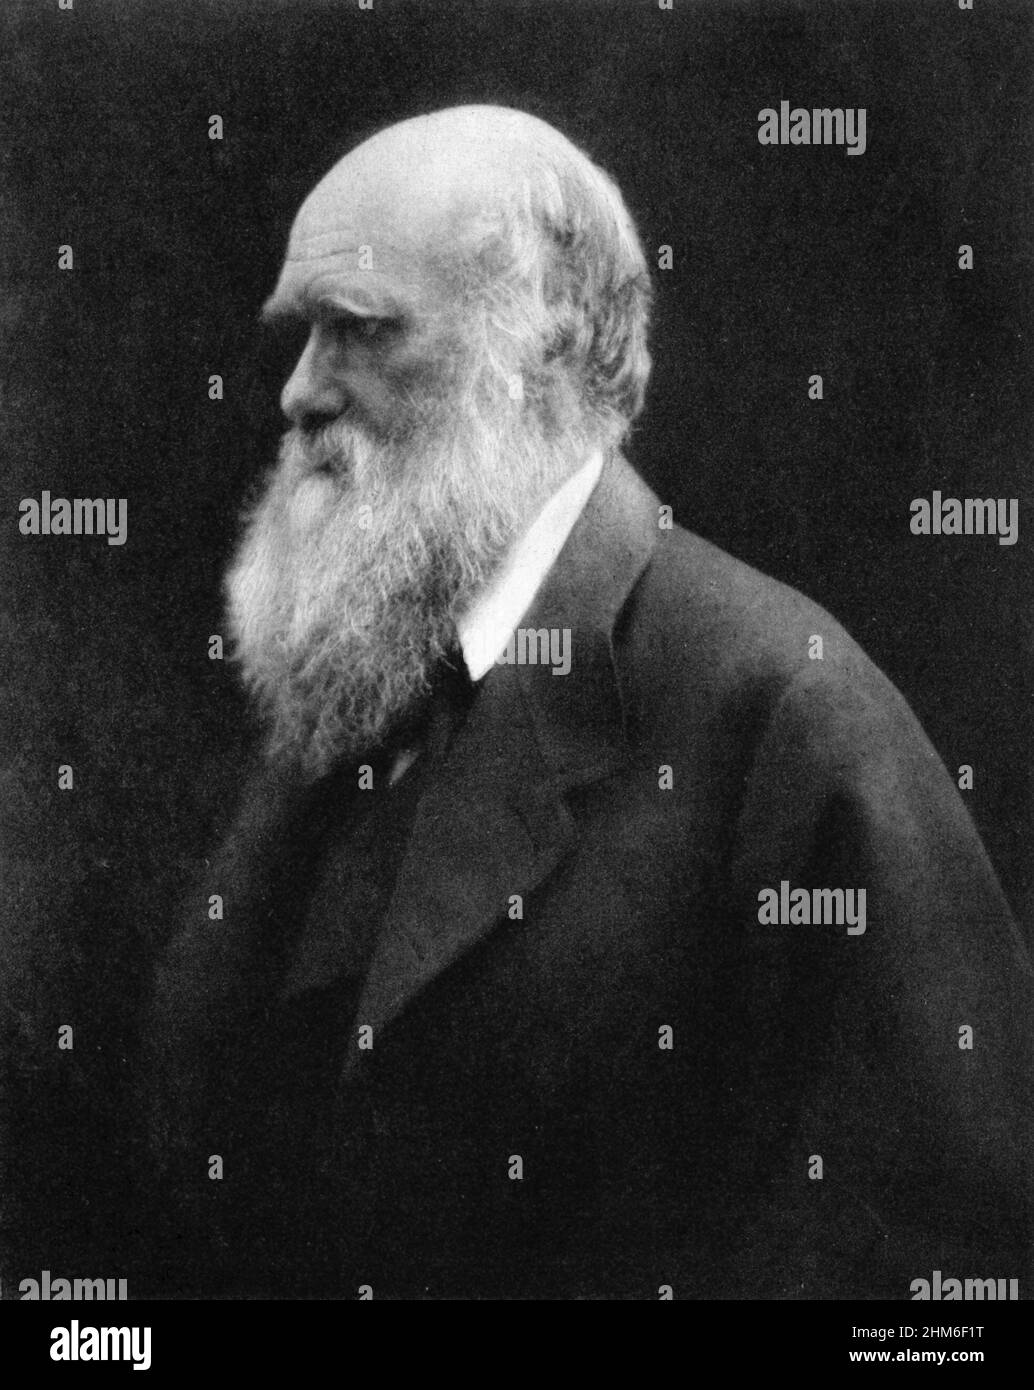 Ritratto dello scrittore inglese e fondatore della teoria della selezione baturale, Charles Darwin dal 1868 quando aveva 57 anni. Foto Stock